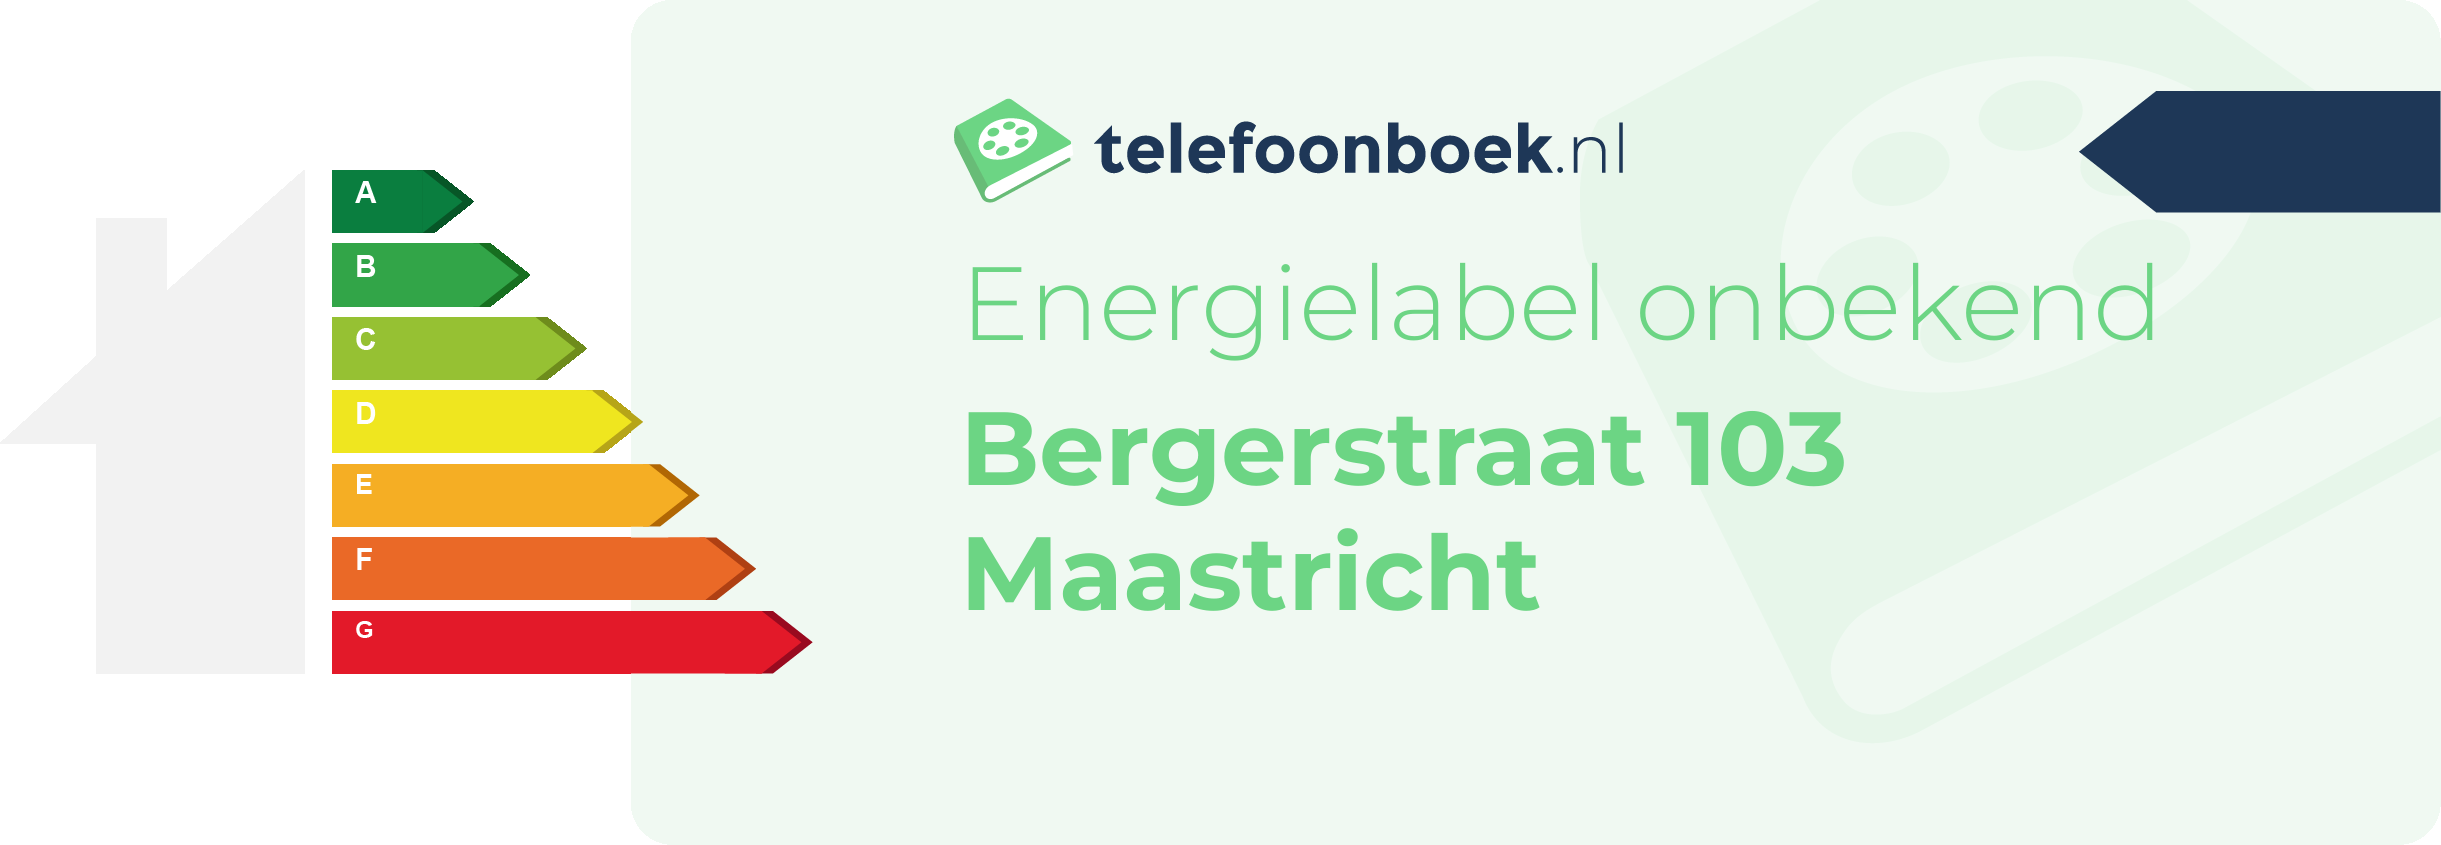 Energielabel Bergerstraat 103 Maastricht